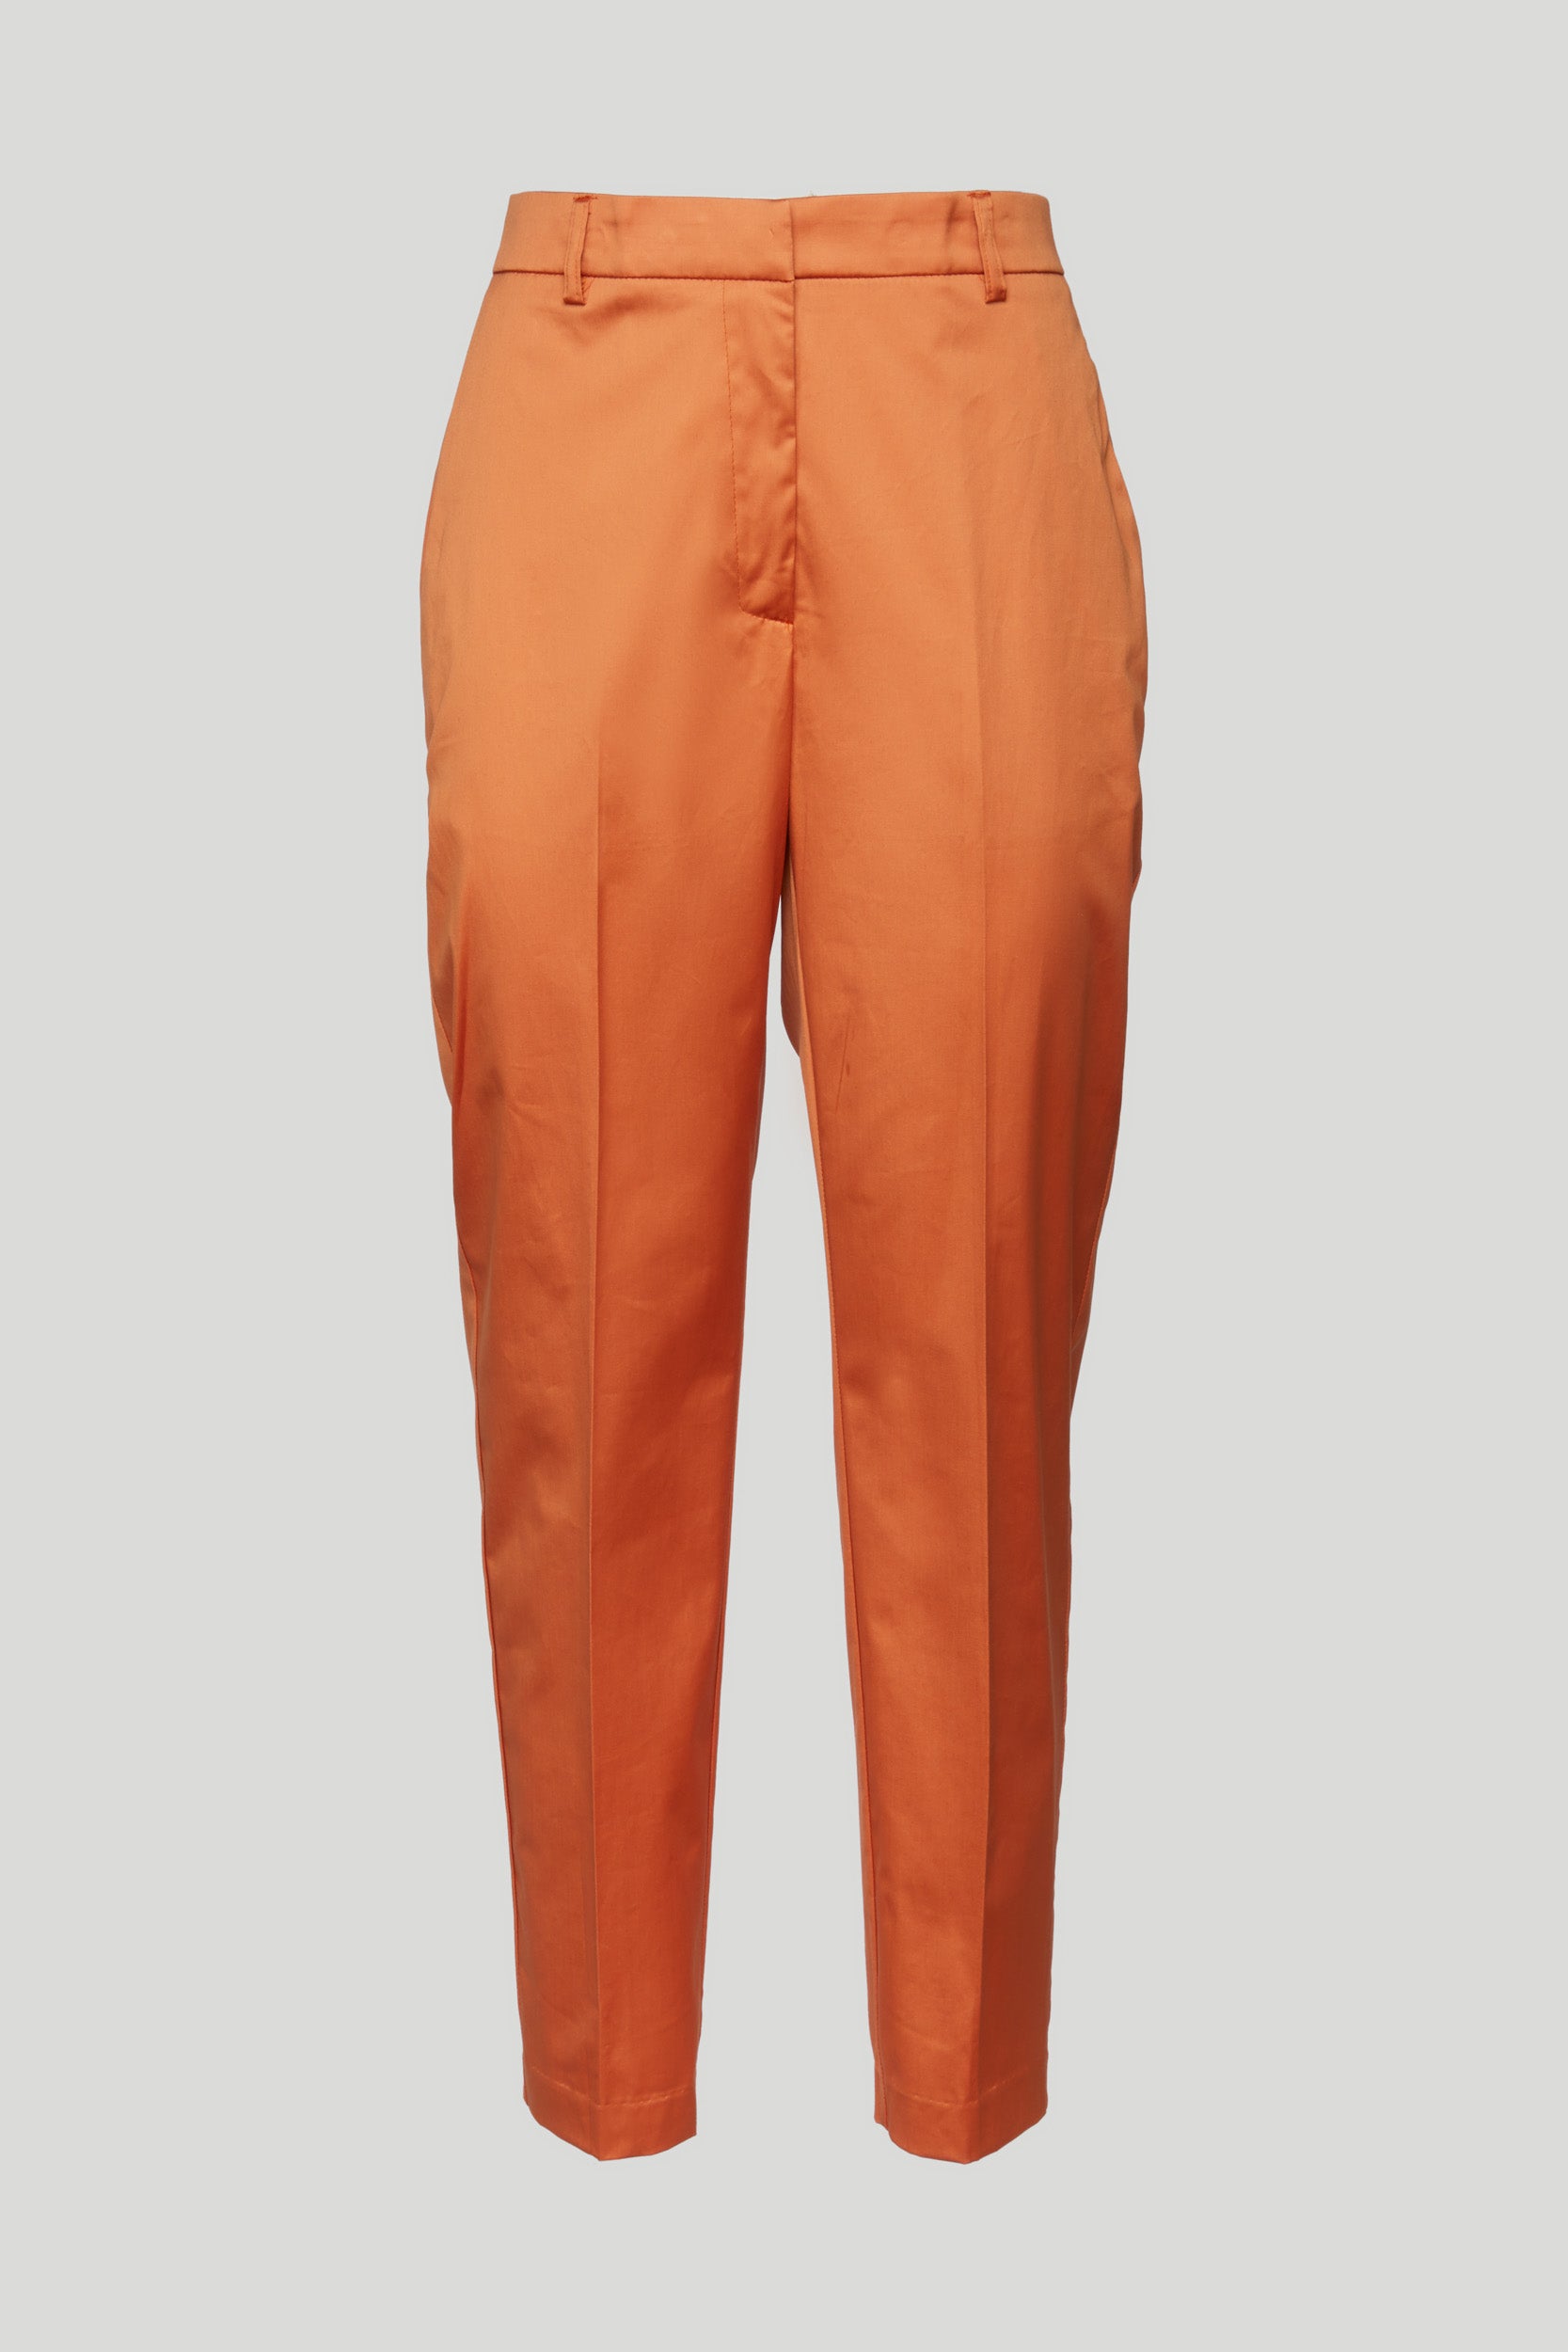 OTTOD'AME Orange Satin Trousers